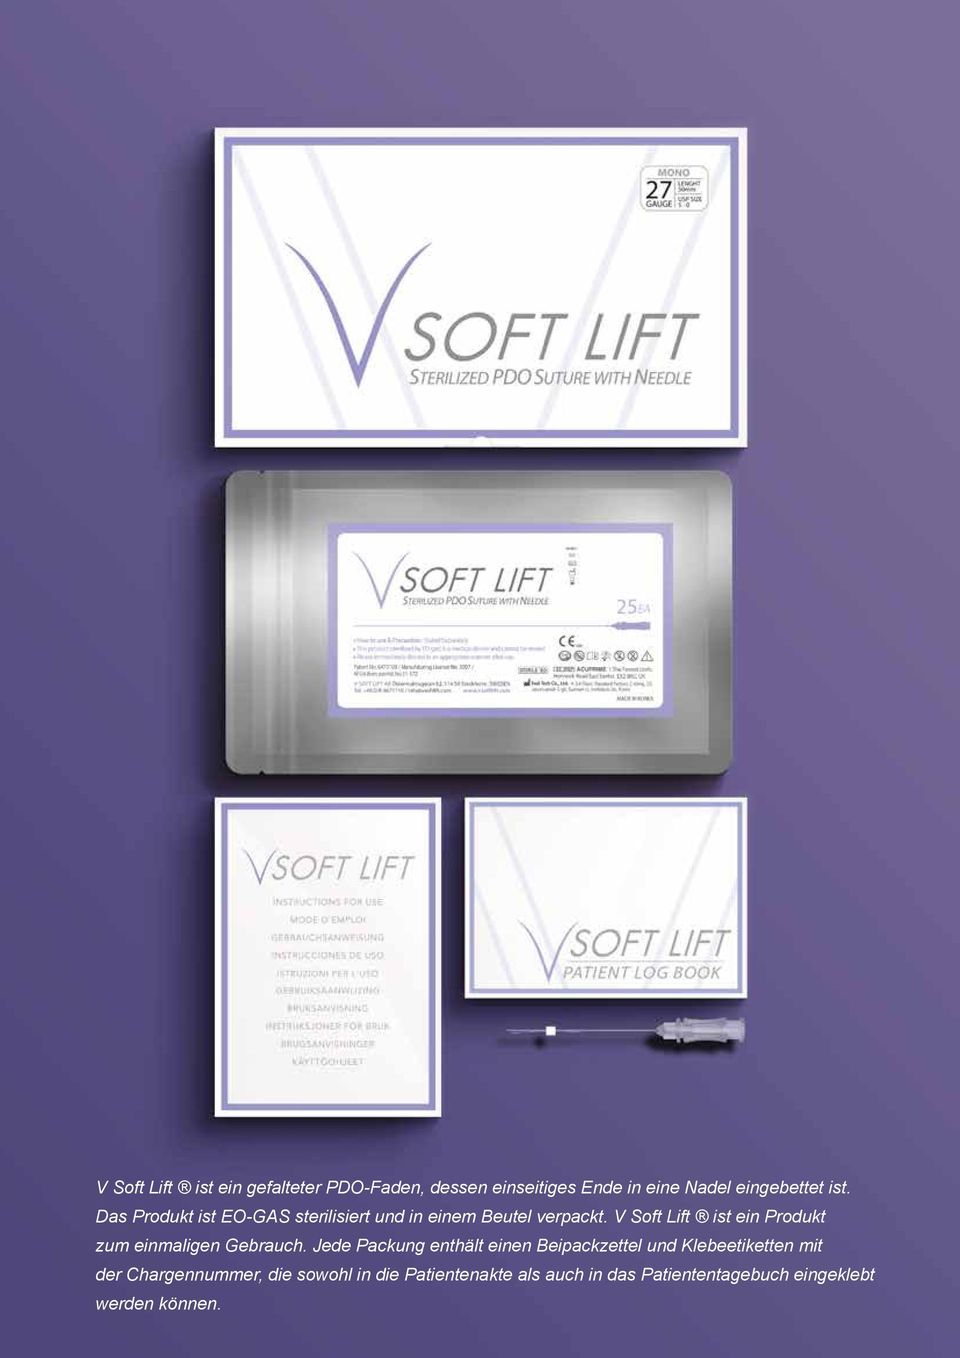 V Soft Lift ist ein Produkt zum einmaligen Gebrauch.